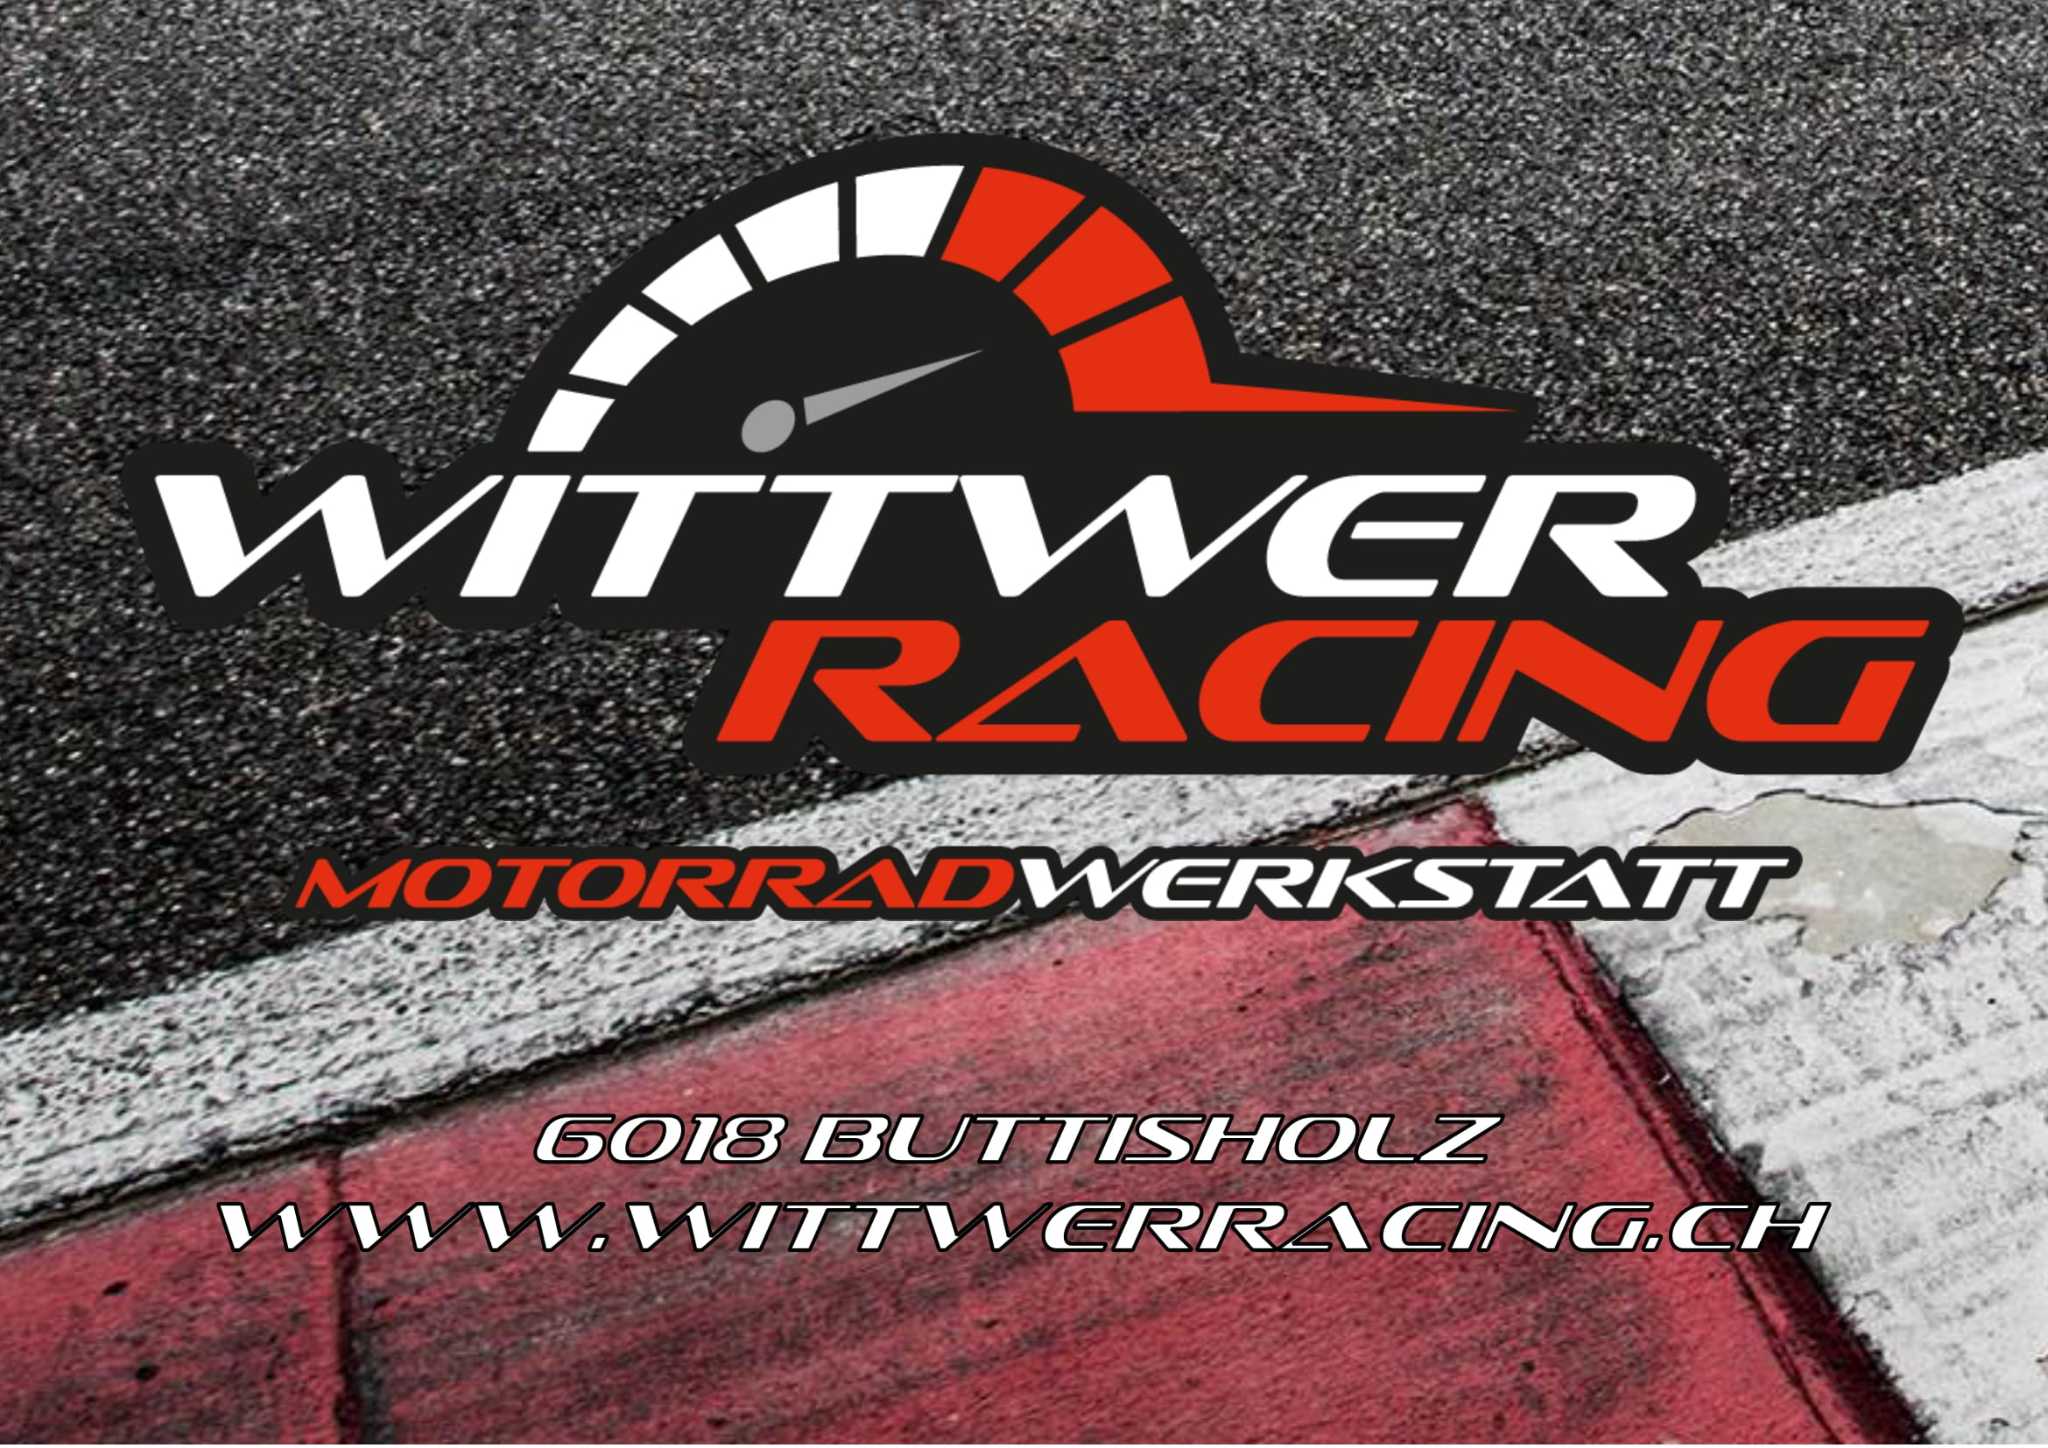 Wittwer Racing GmbH